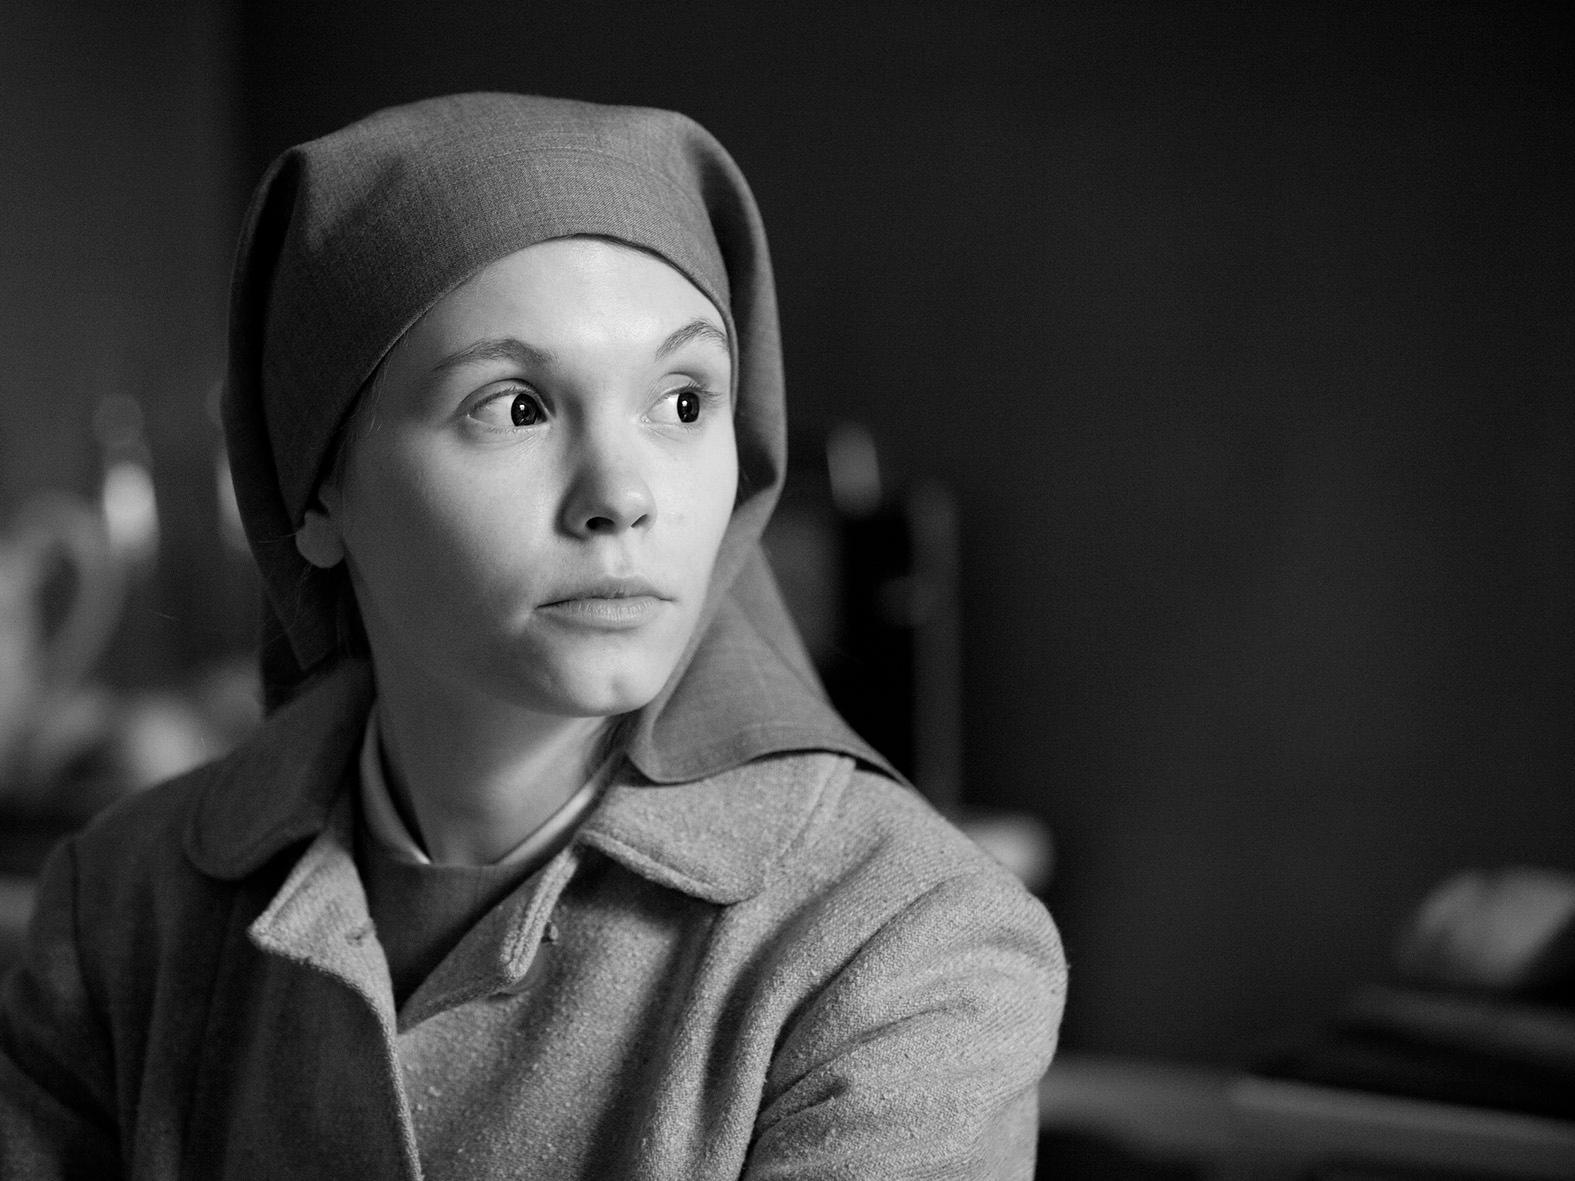 Agata Trzebuchowska i ”Ida” – som när den visades på polsk tv föregicks av en 12 minuter lång film som utmålade Oscarvinnaren som lögnaktig.